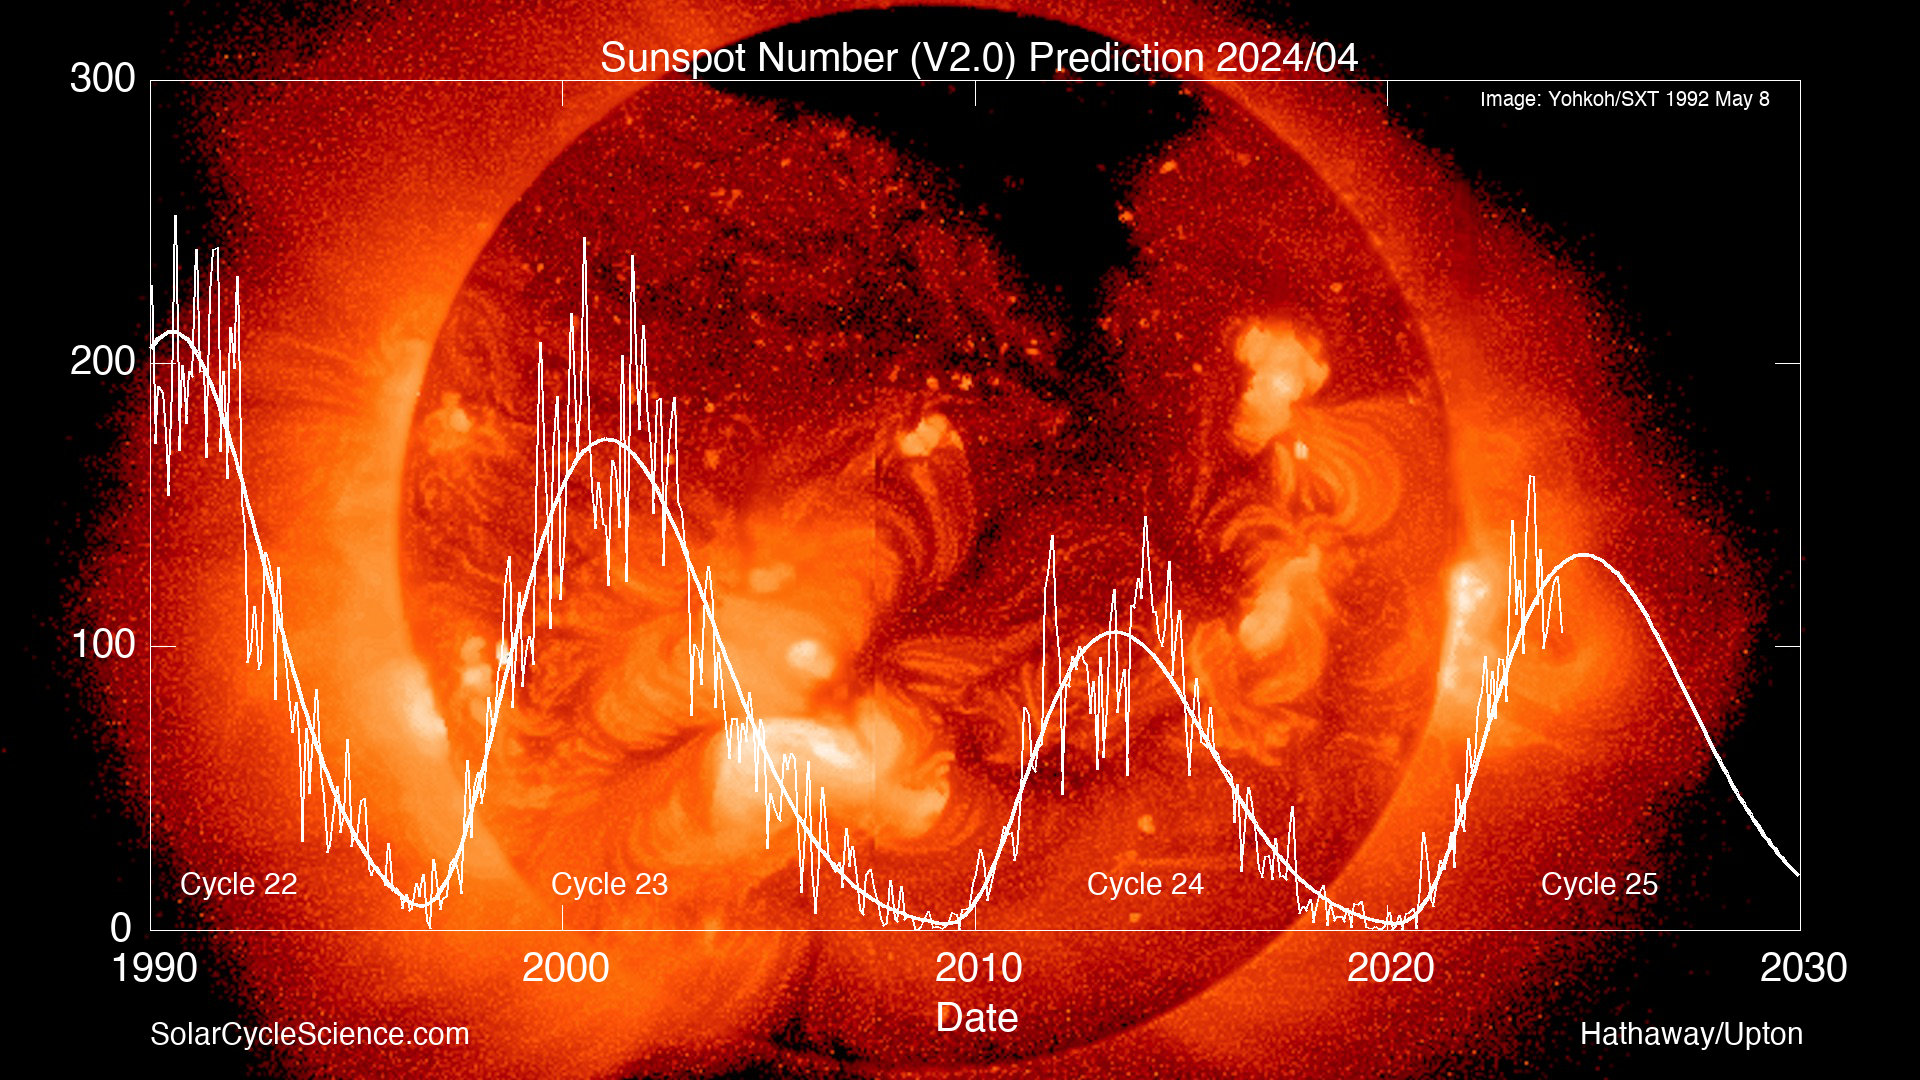 Sunspot Number prediction